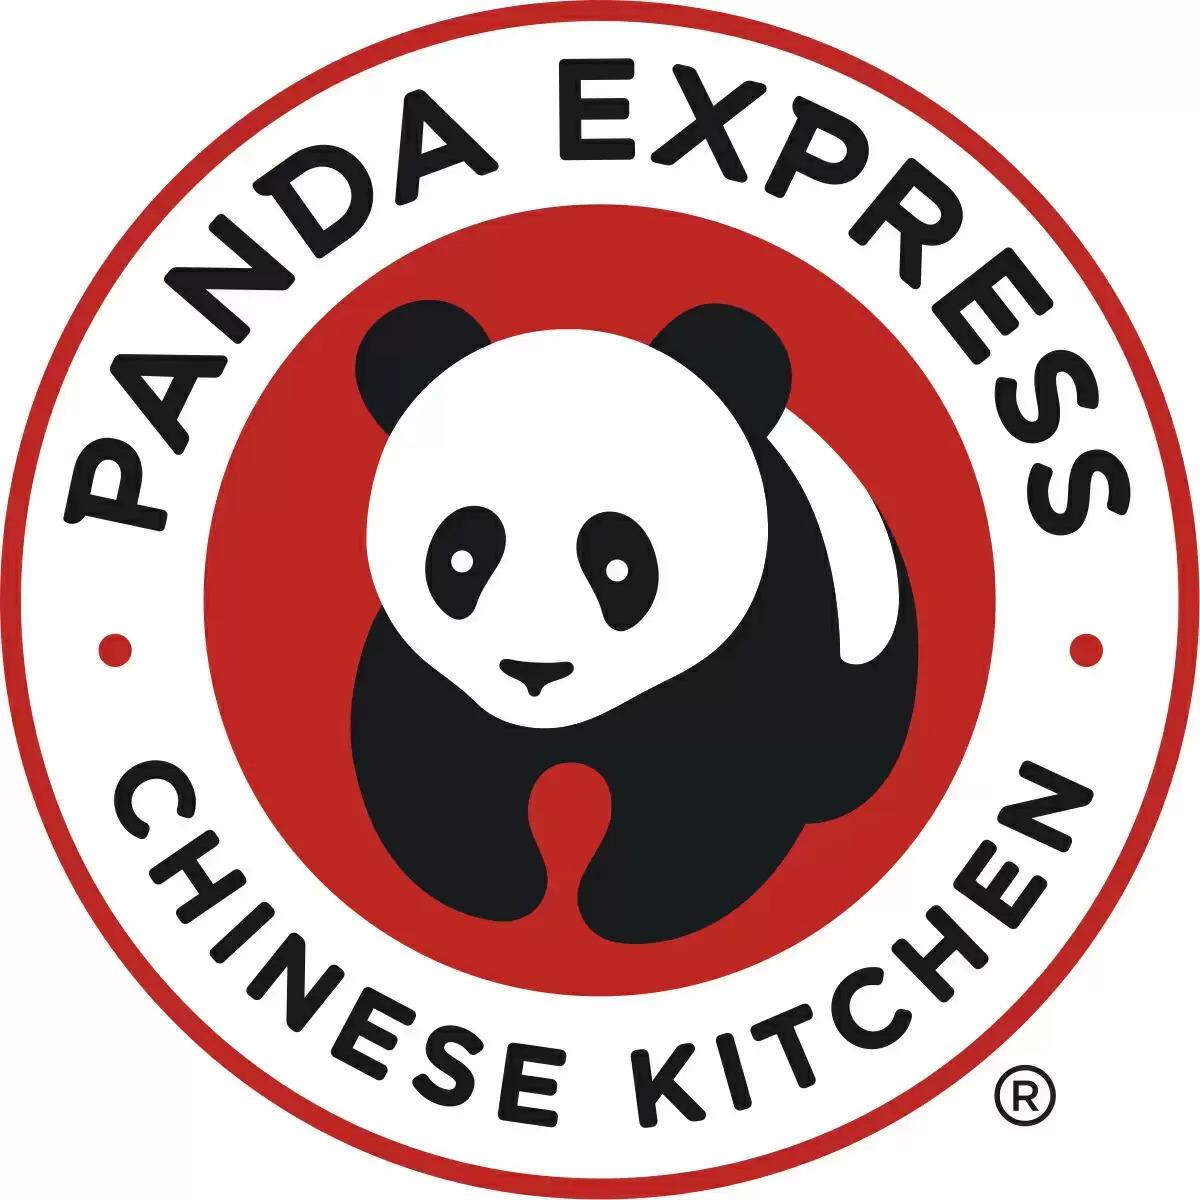 Panda Express Buy One Get One Free BOGO Coupon